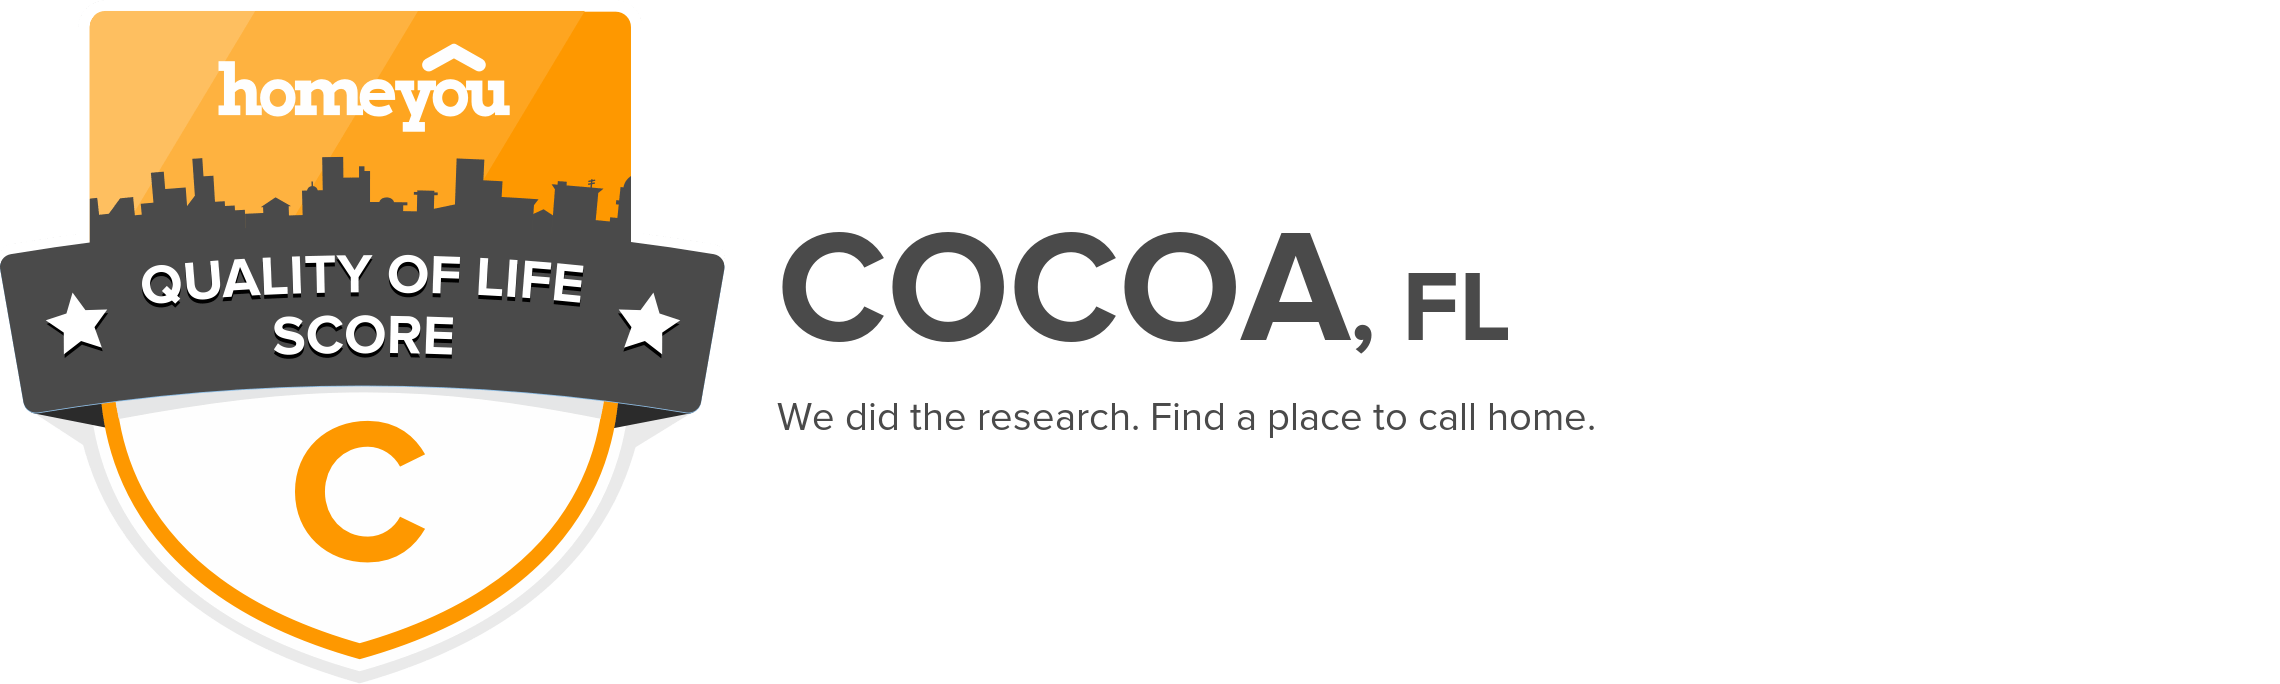 Cocoa, FL